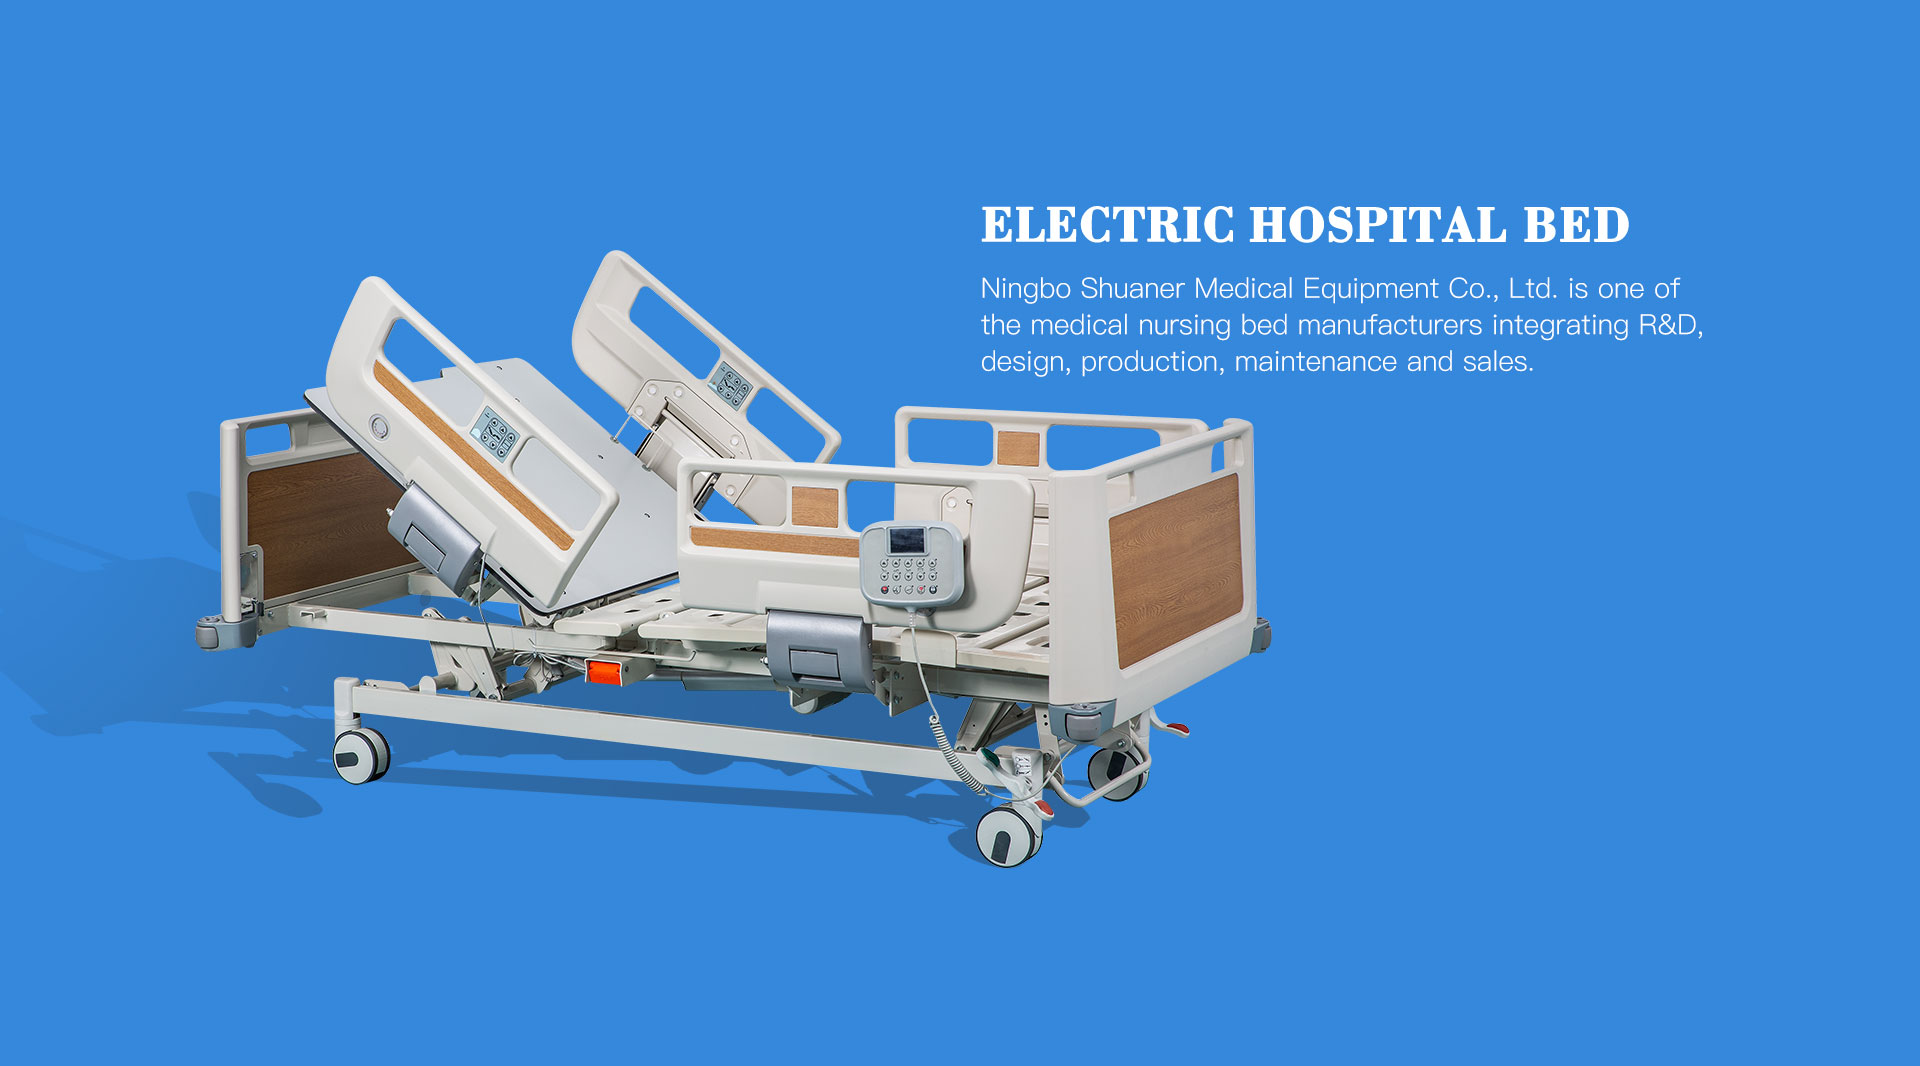 Pětifunkční elektrické nemocniční lůžko (KPR)